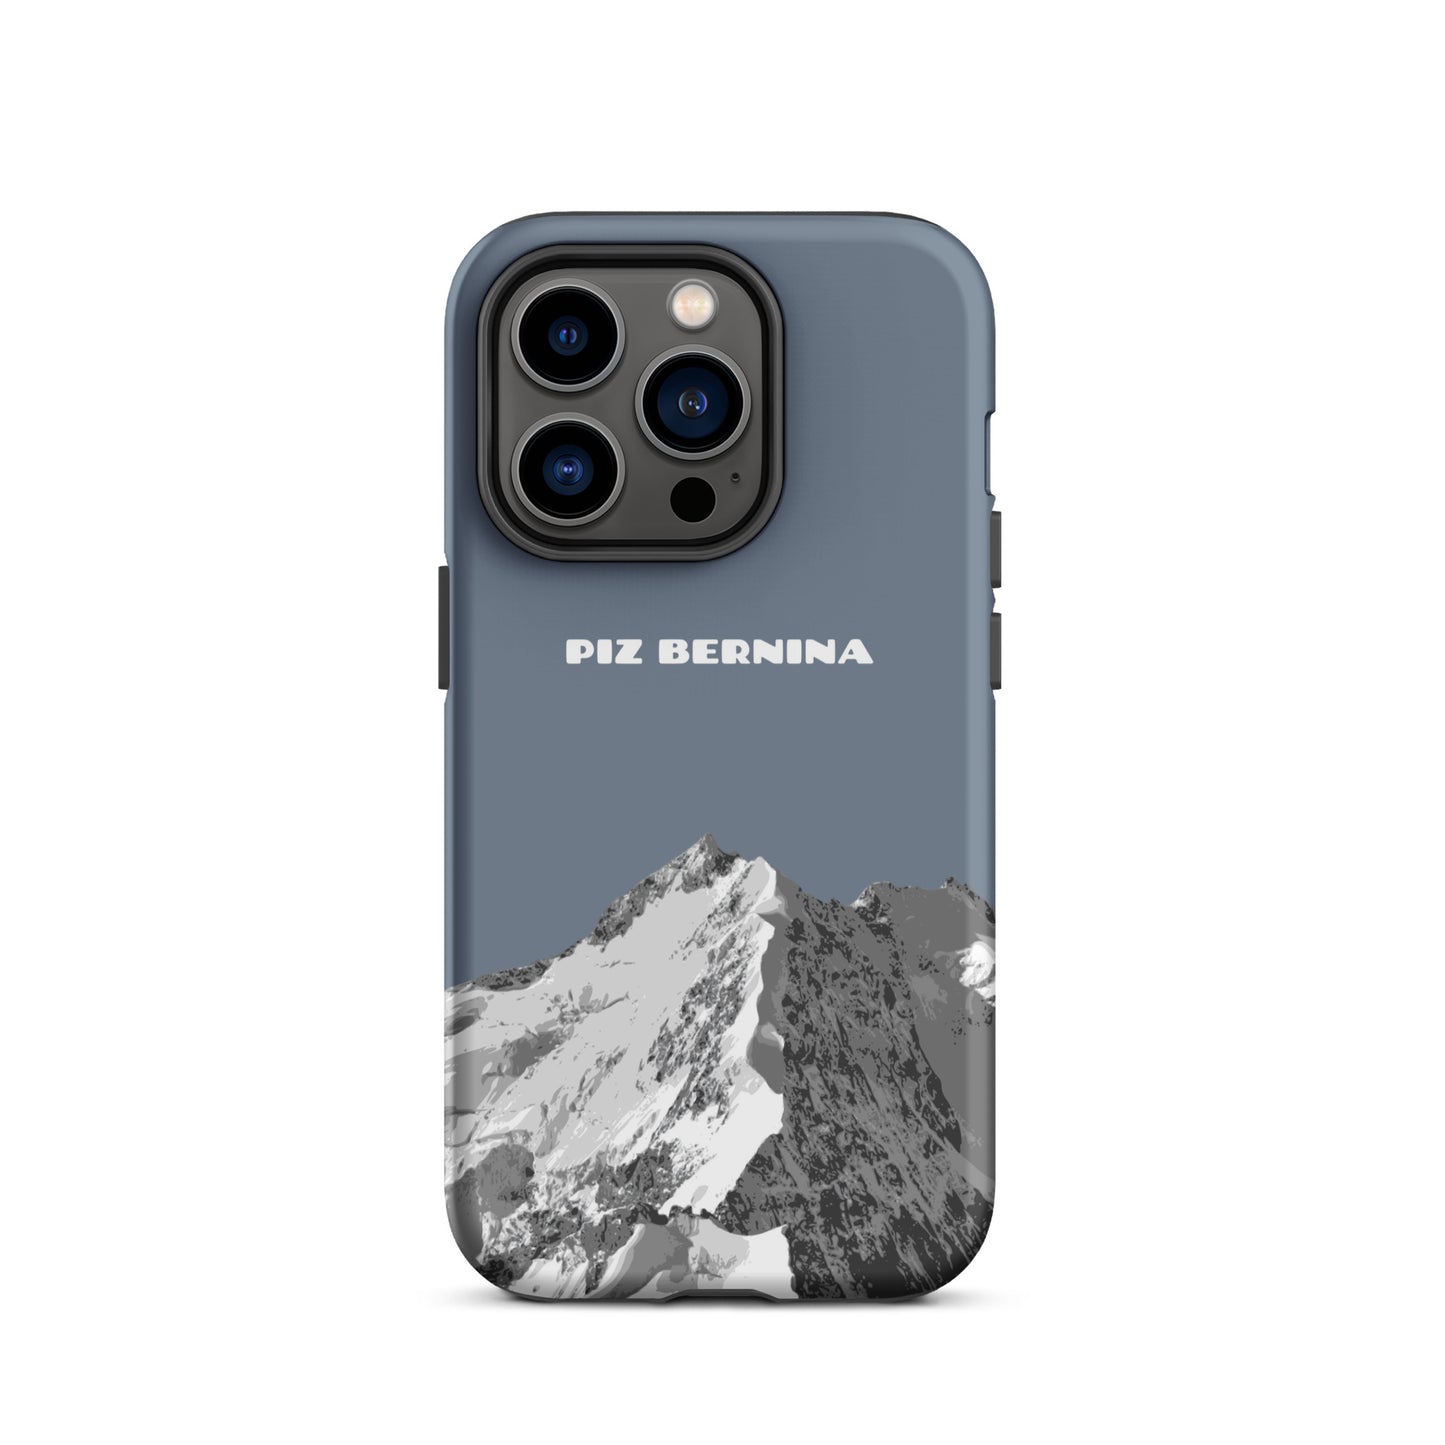 Hülle für das iPhone 14 Pro von Apple in der Farbe Schiefergrau, dass den Piz Bernina in Graubünden zeigt.